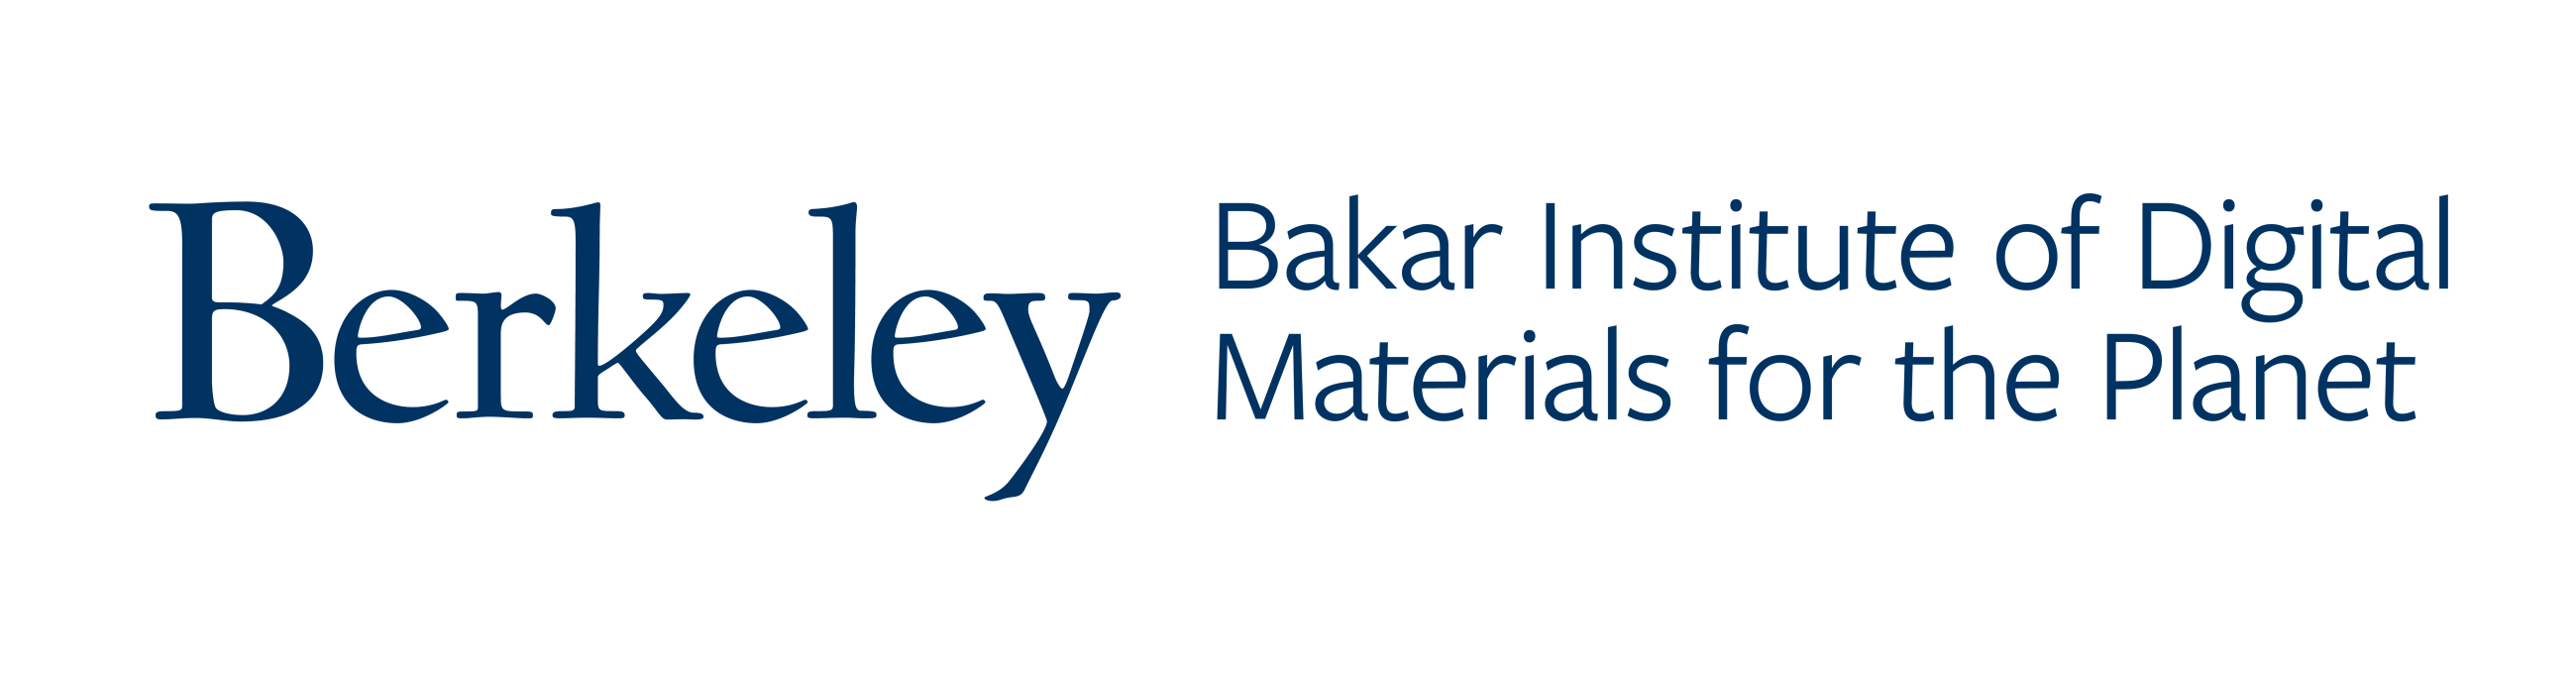 Bakar Institute of Digital Materials for the Planet